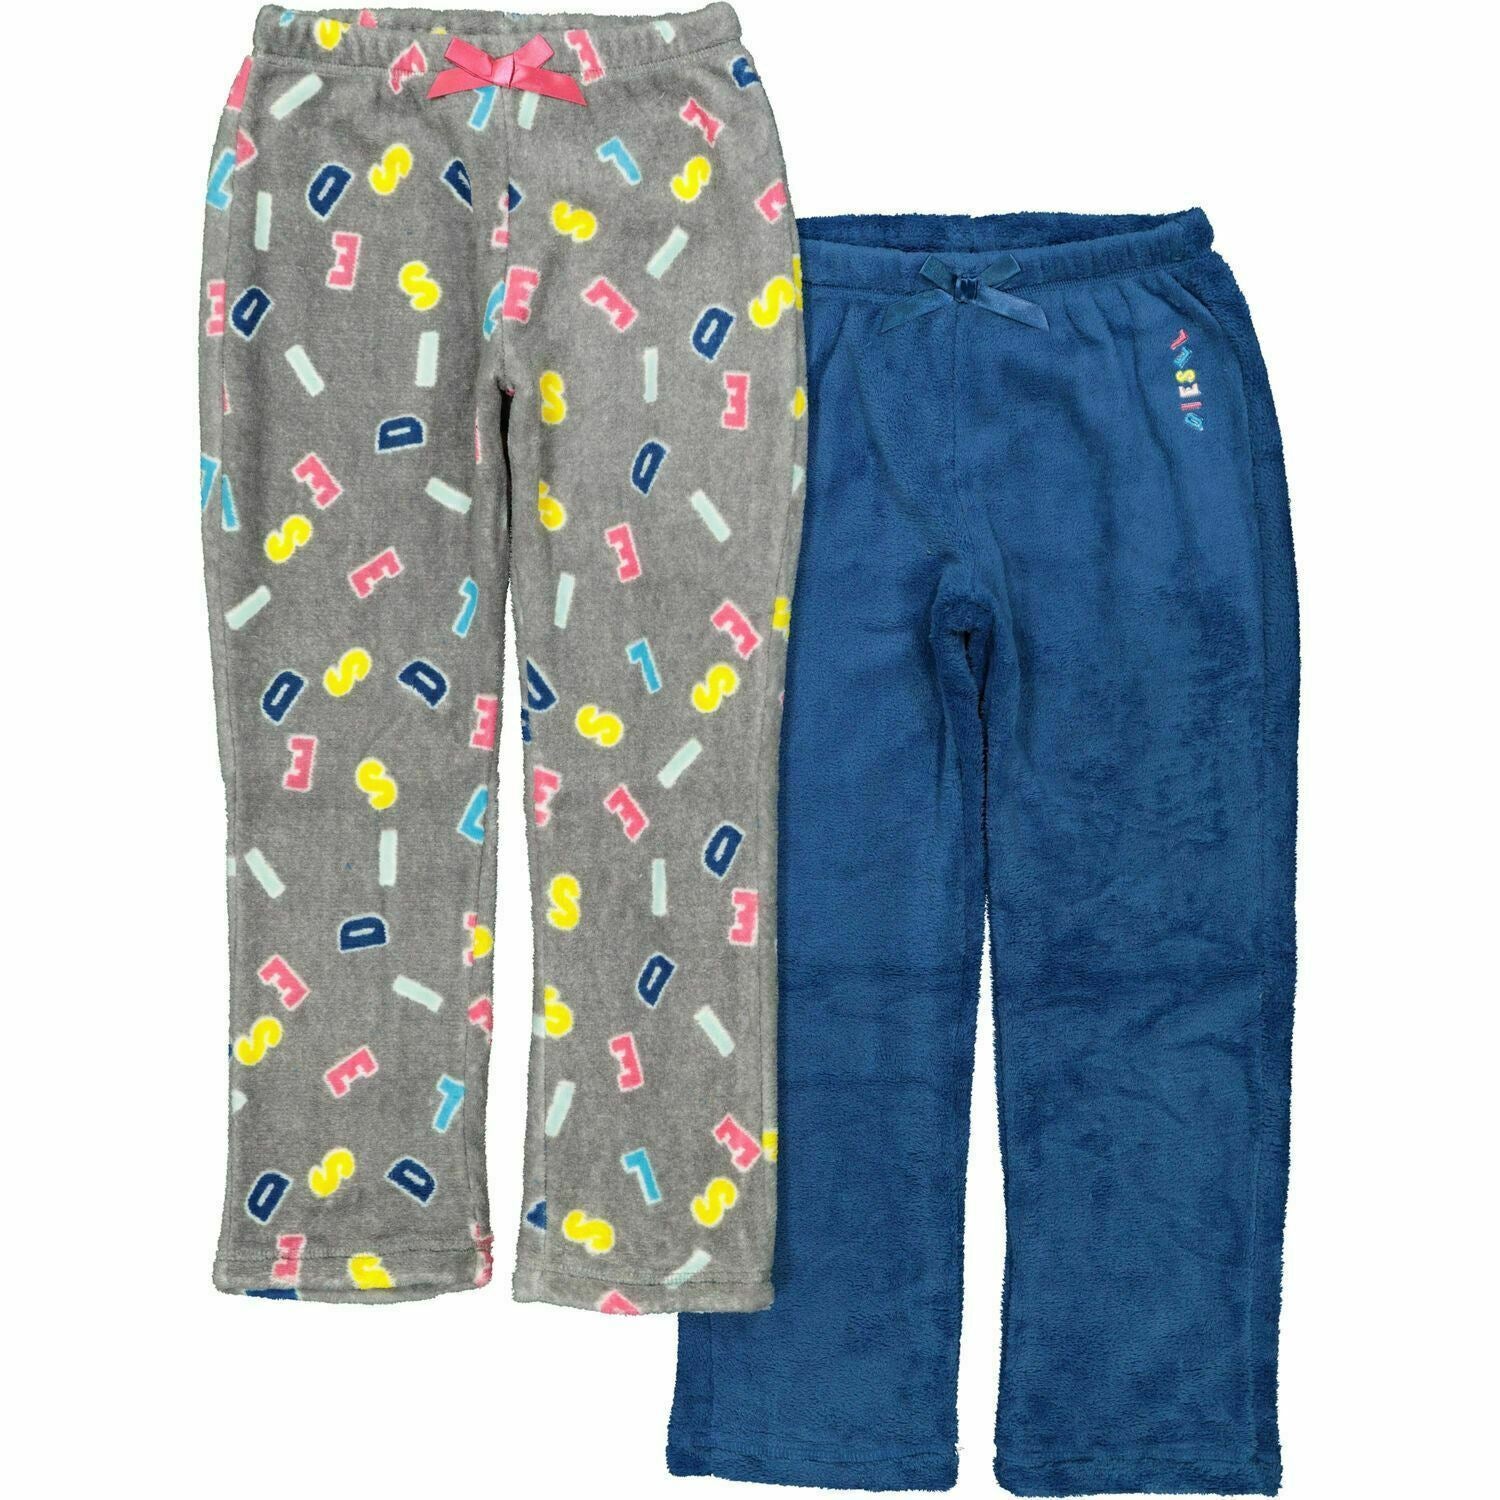 DIESEL 2pk Girls Fleece Loungewear Pants Pyjama Bottoms Joggers Blue/Grey 7 yrs